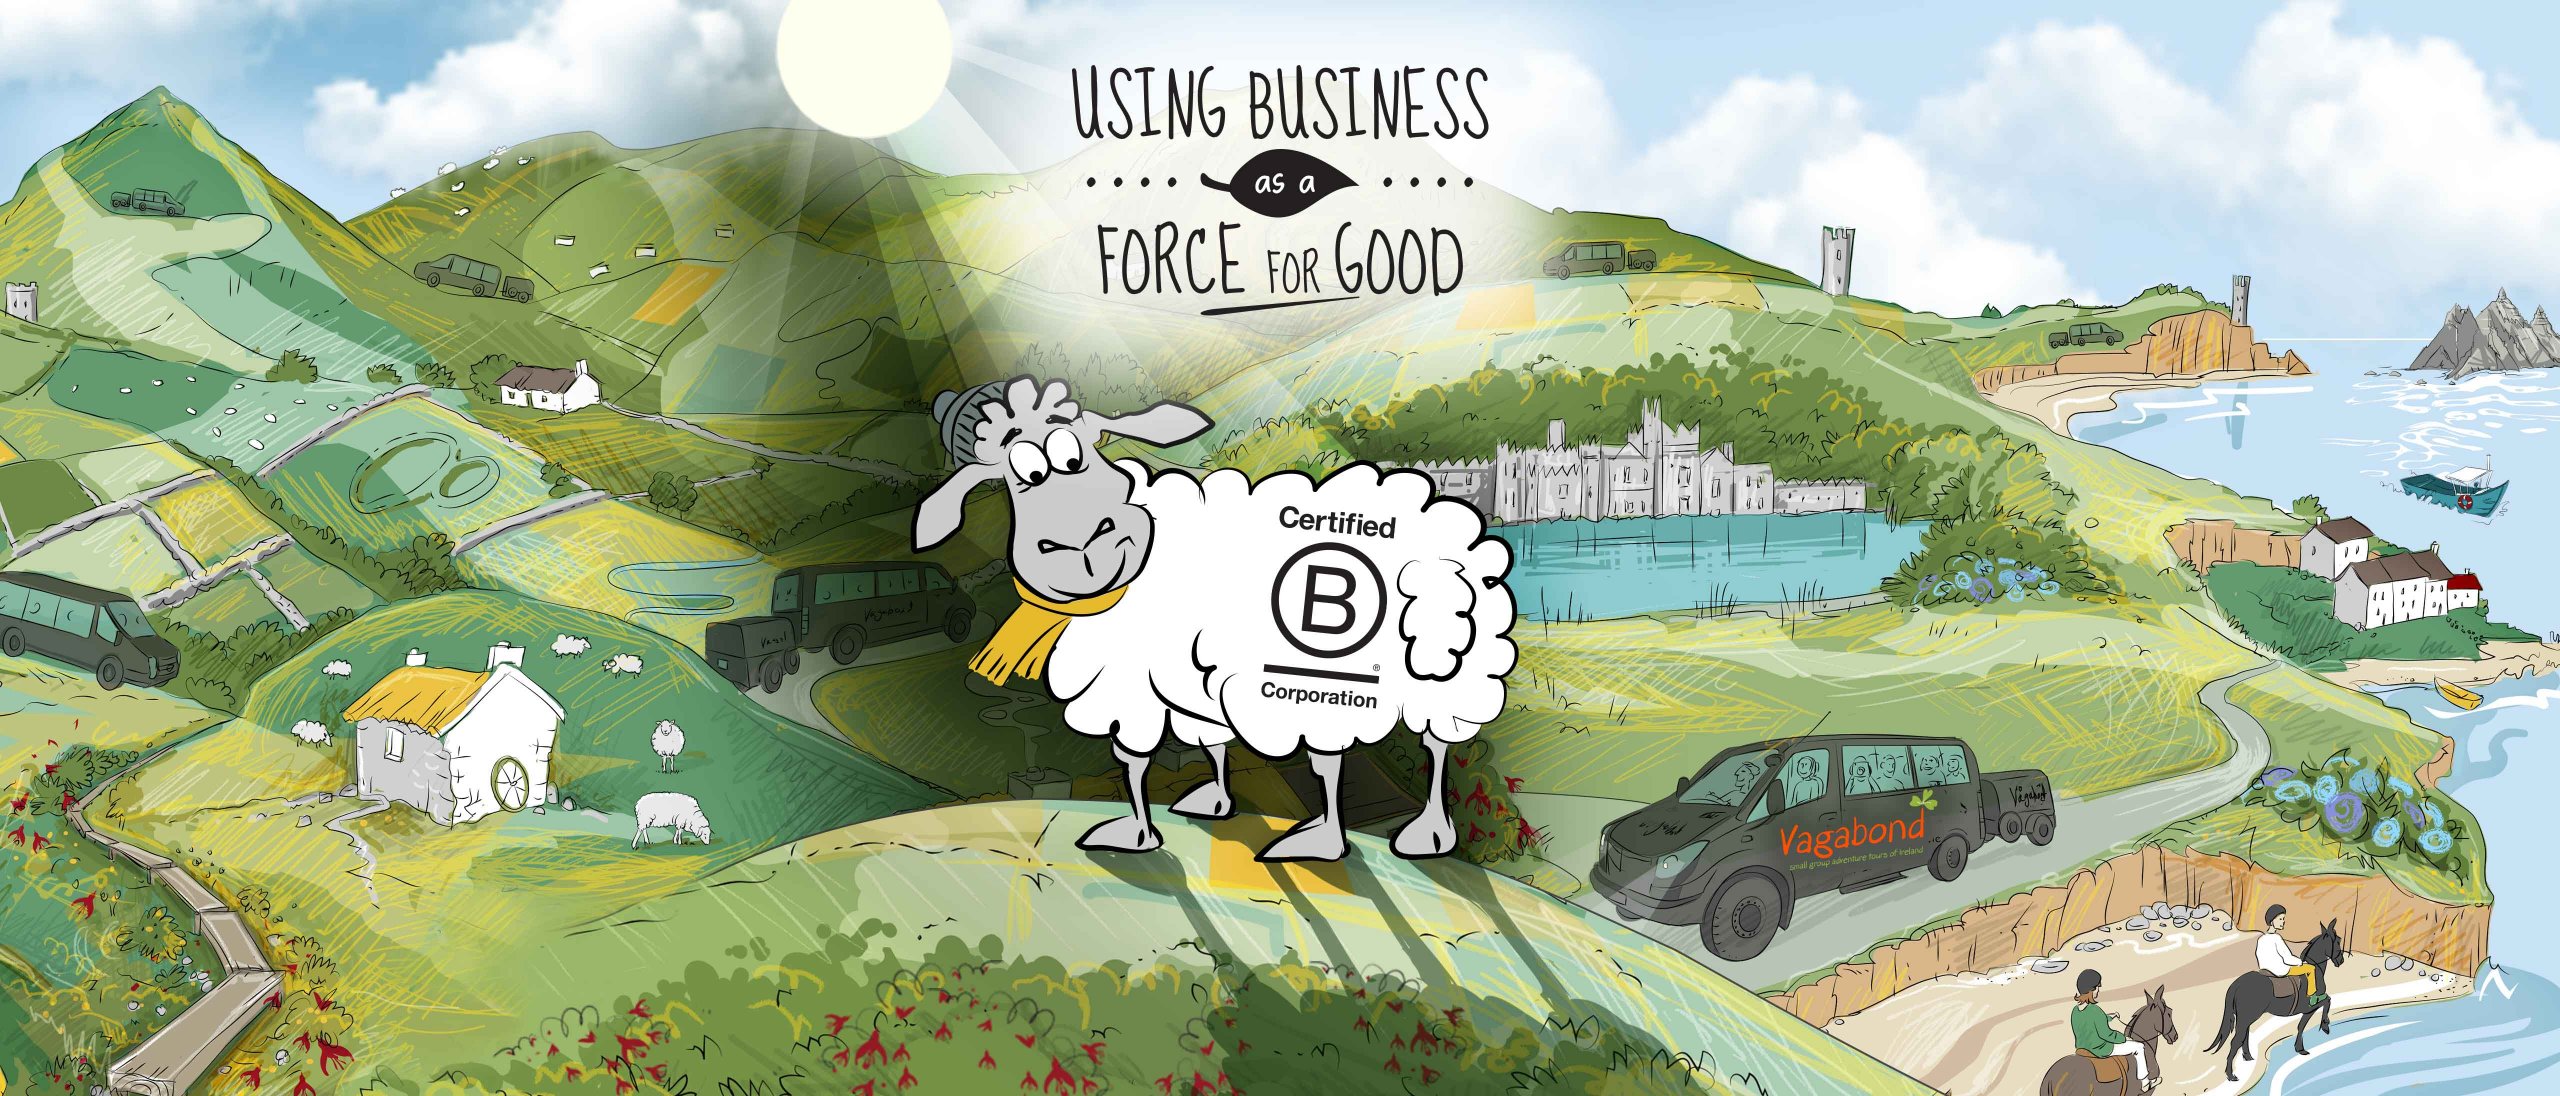 B Corp logo on animated sheep and Ireland background